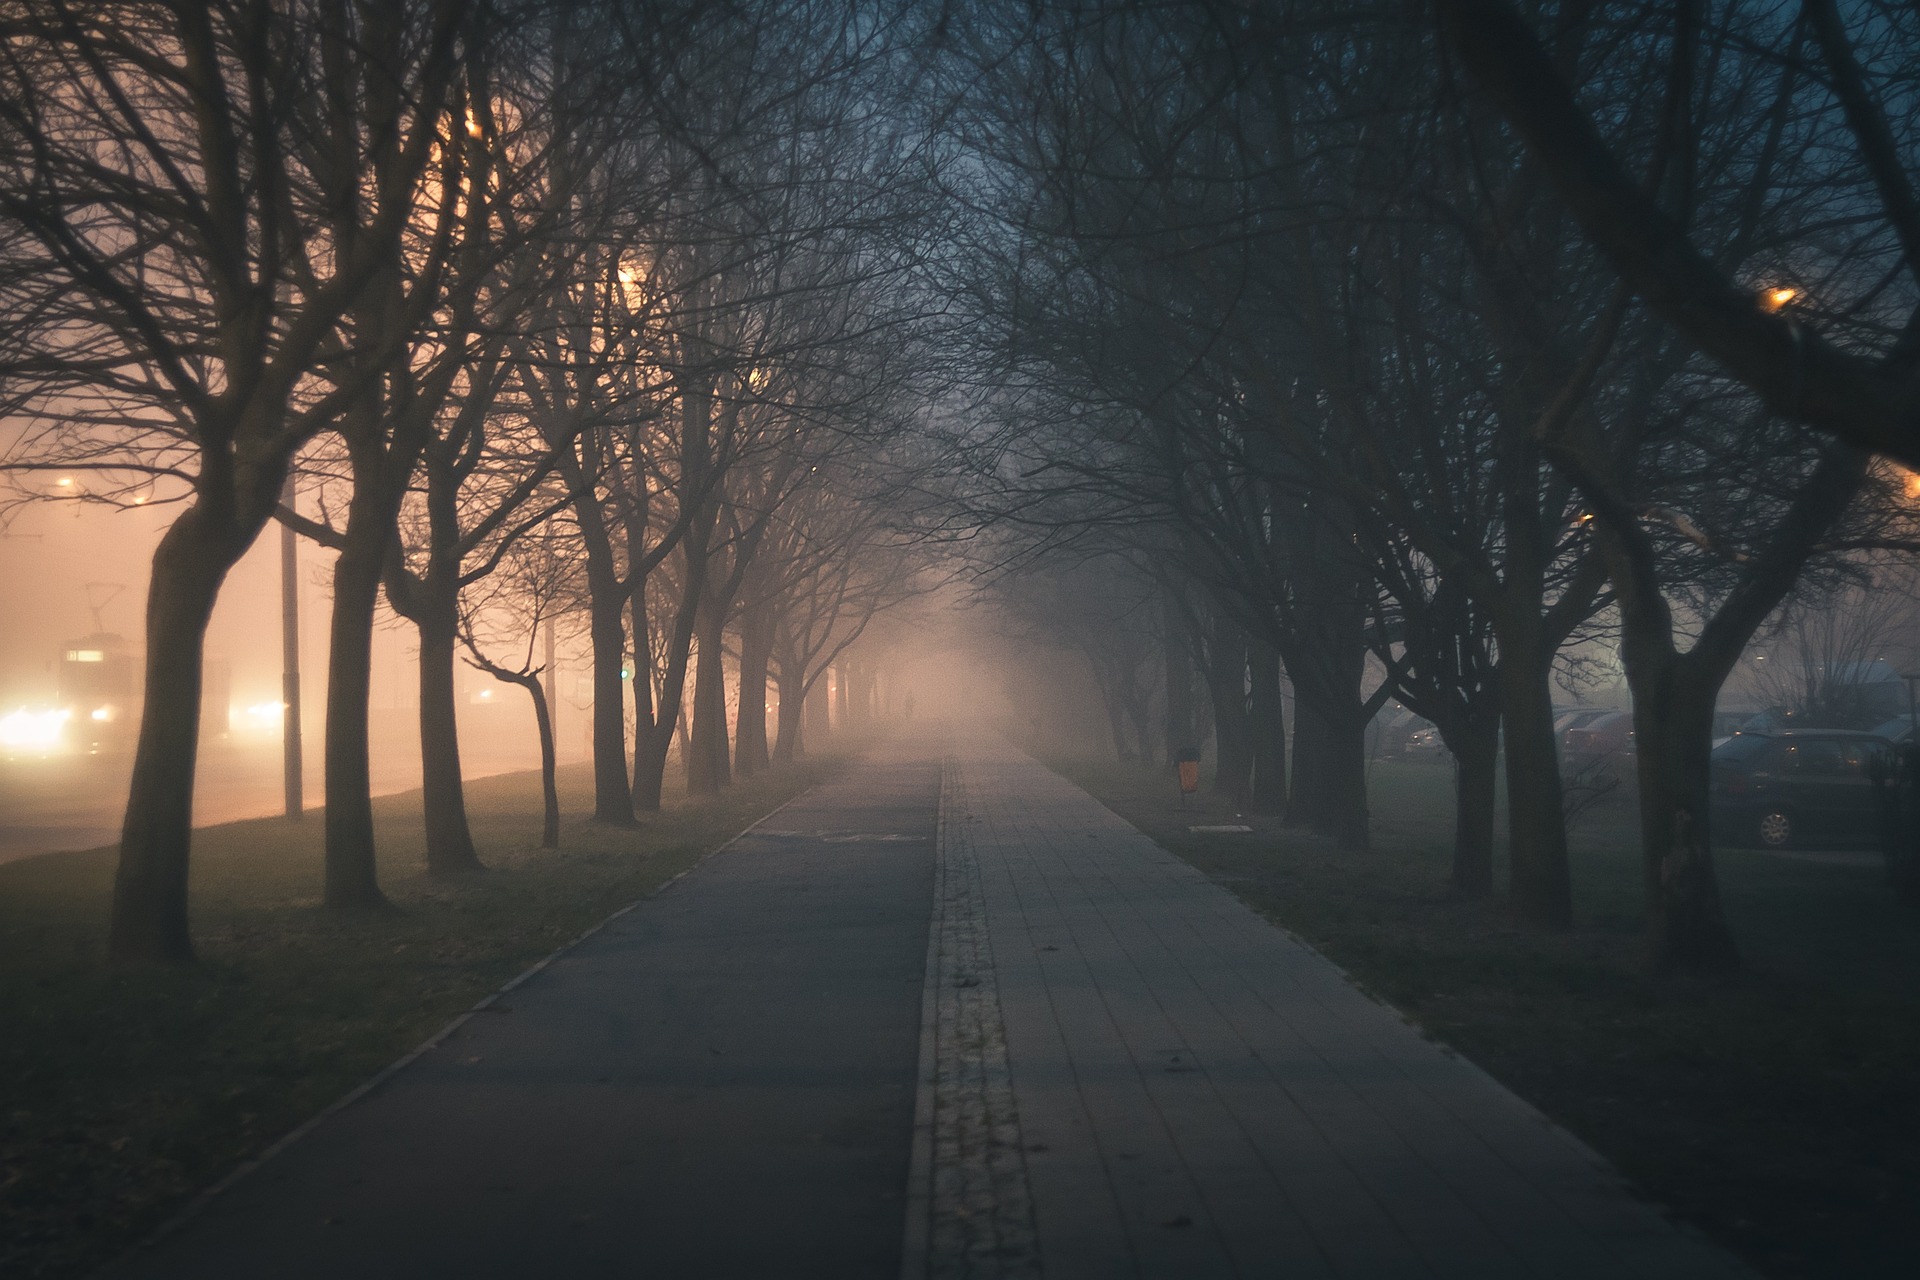 zdjęcie poglądowe; mgła w mieście; na zdjęciu chodnik i drzewa po obu stronach